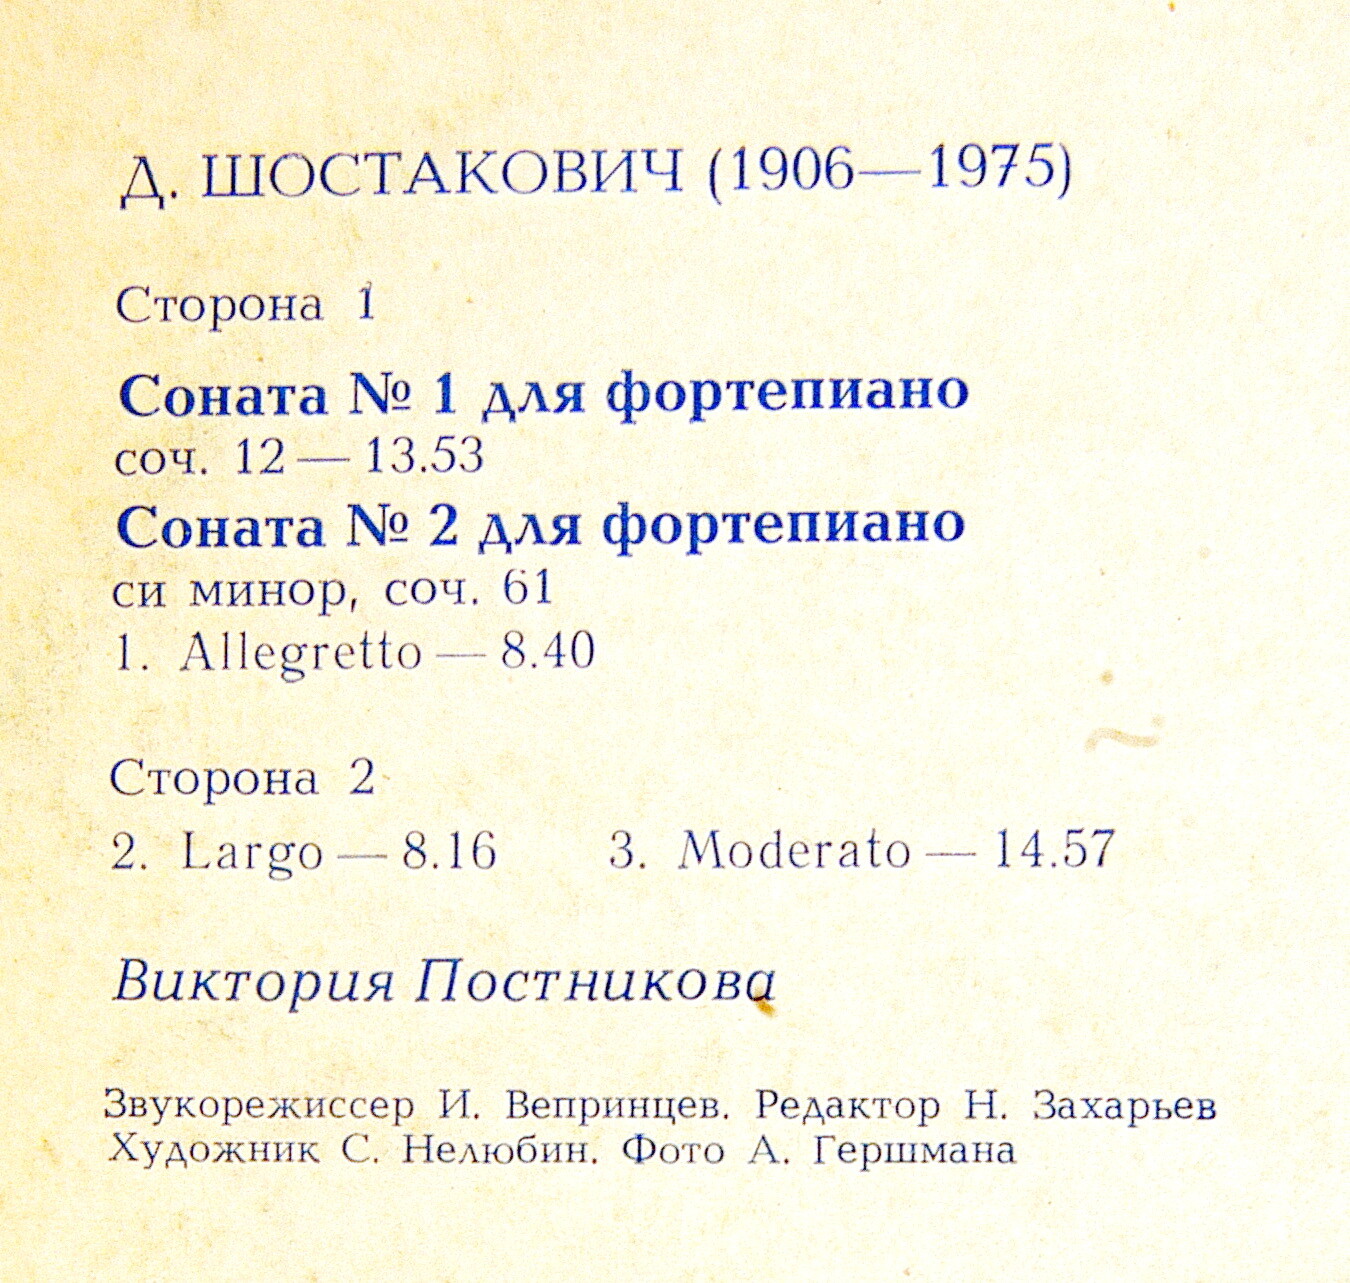 Д. ШОСТАКОВИЧ (1906-1975). Сонаты для фортепиано